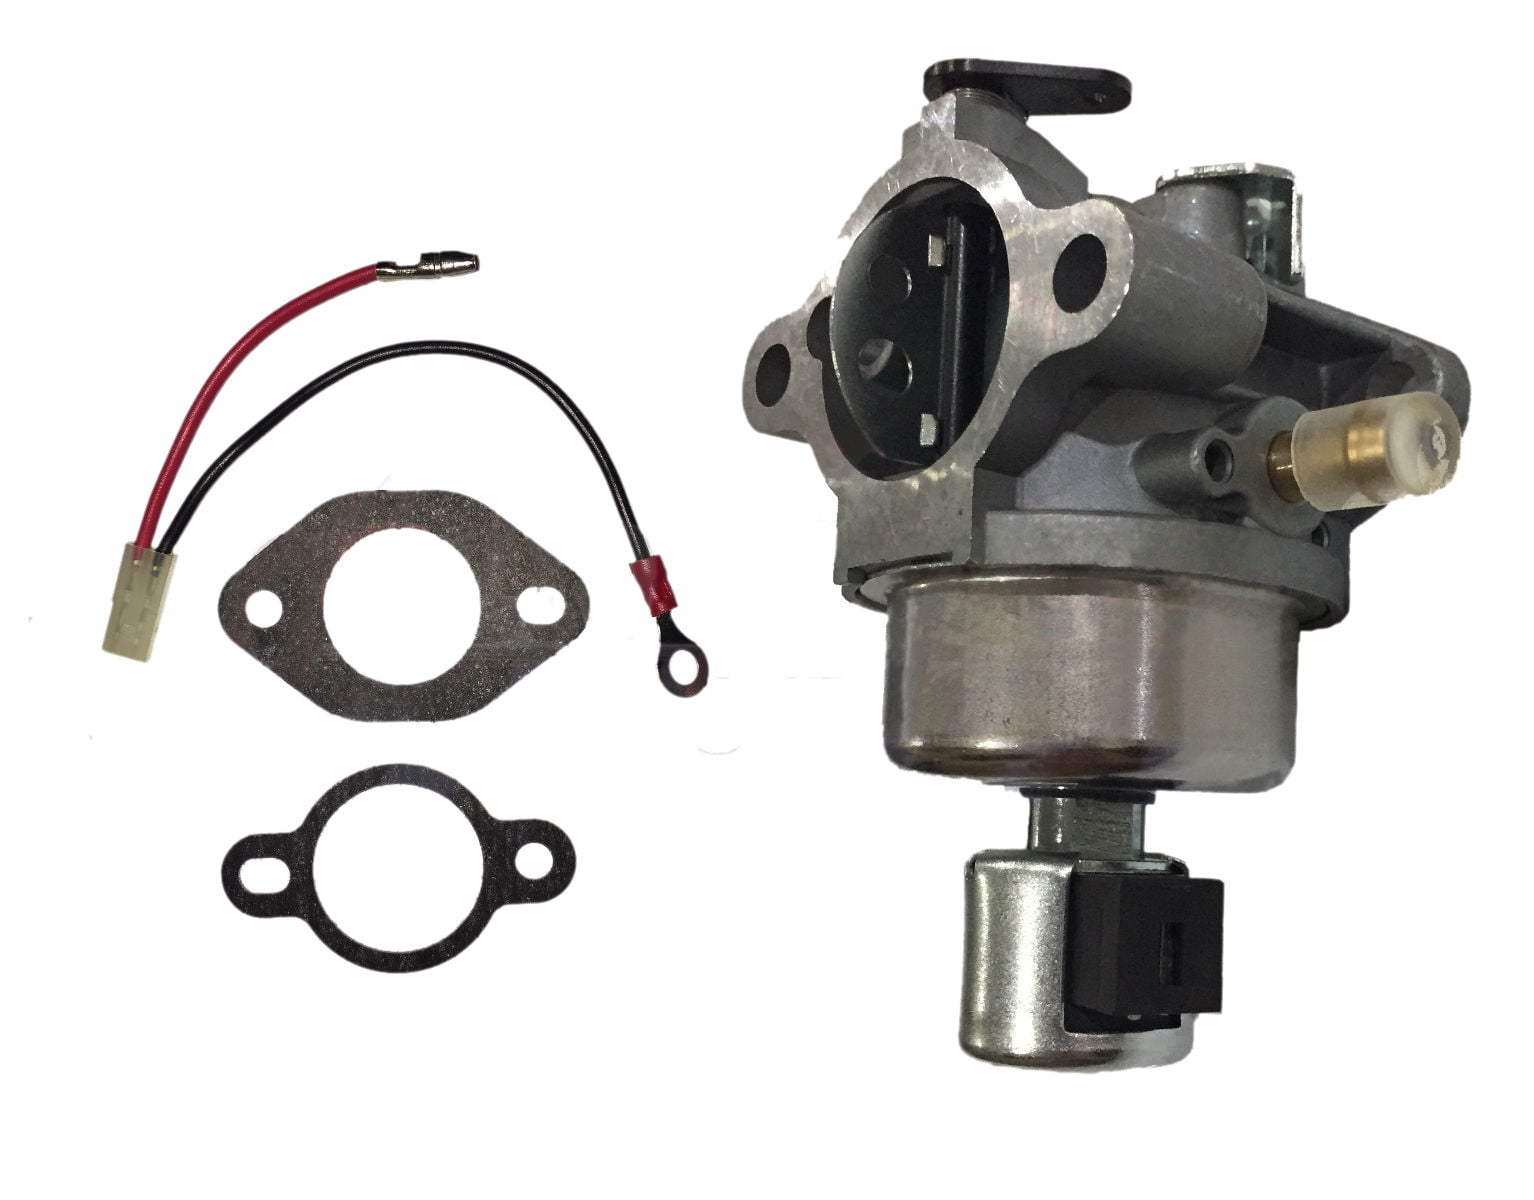 Carb Carburetor Kit for Kohler Engines 20 853 88-S 2085388-S New 